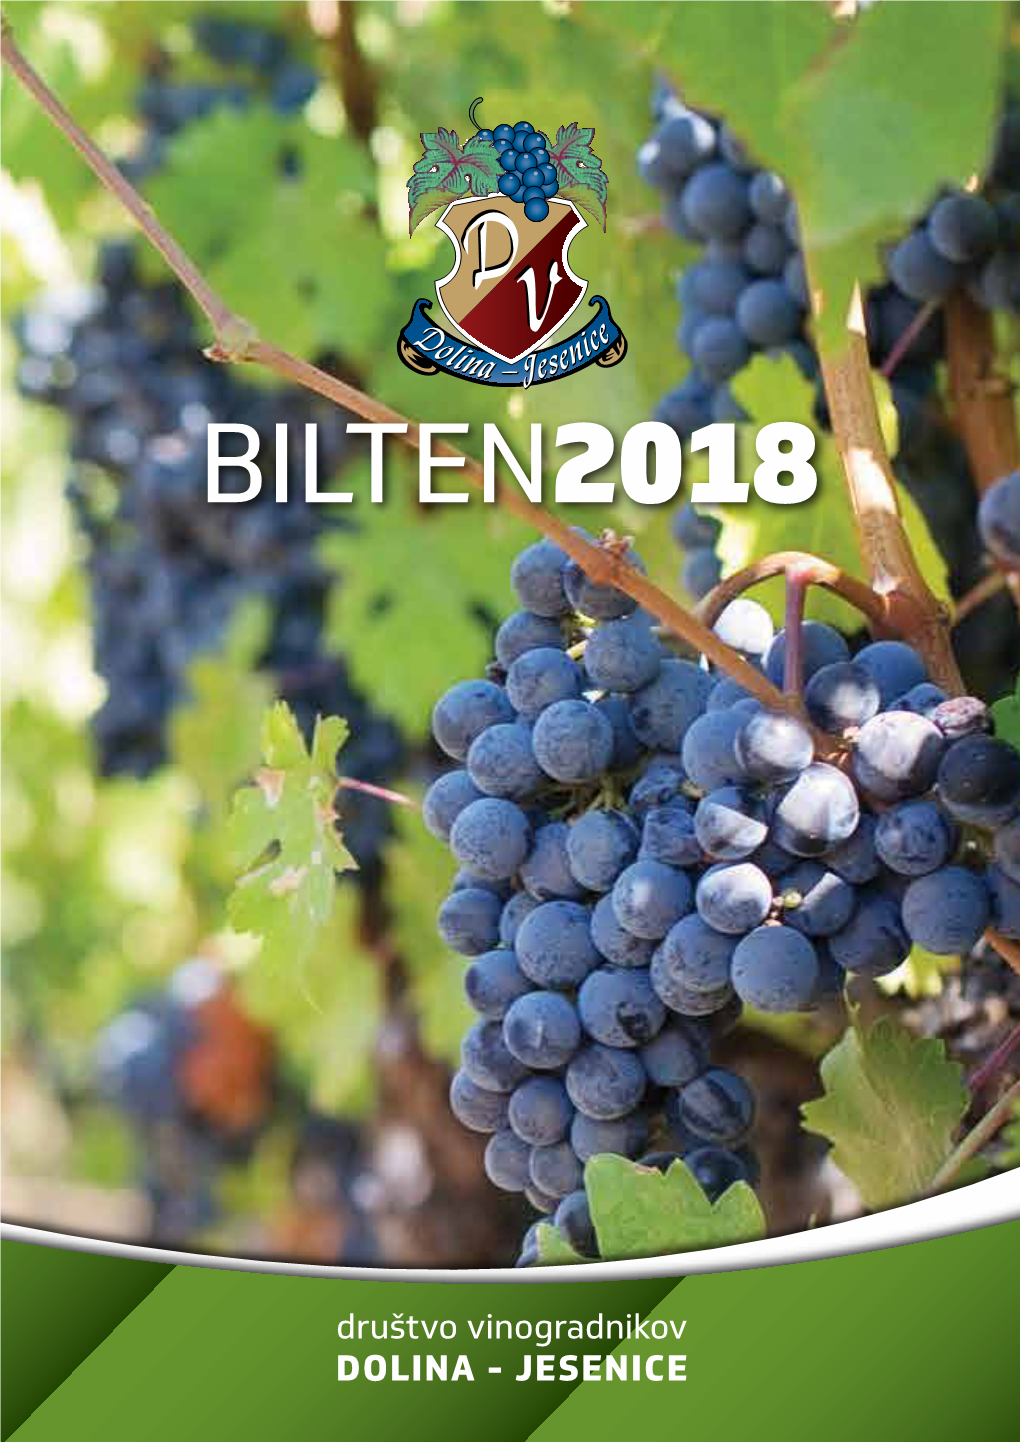 Bilten 2016 2 Društvo Vinogradnikov Dolina - Jesenice Bilten 2018